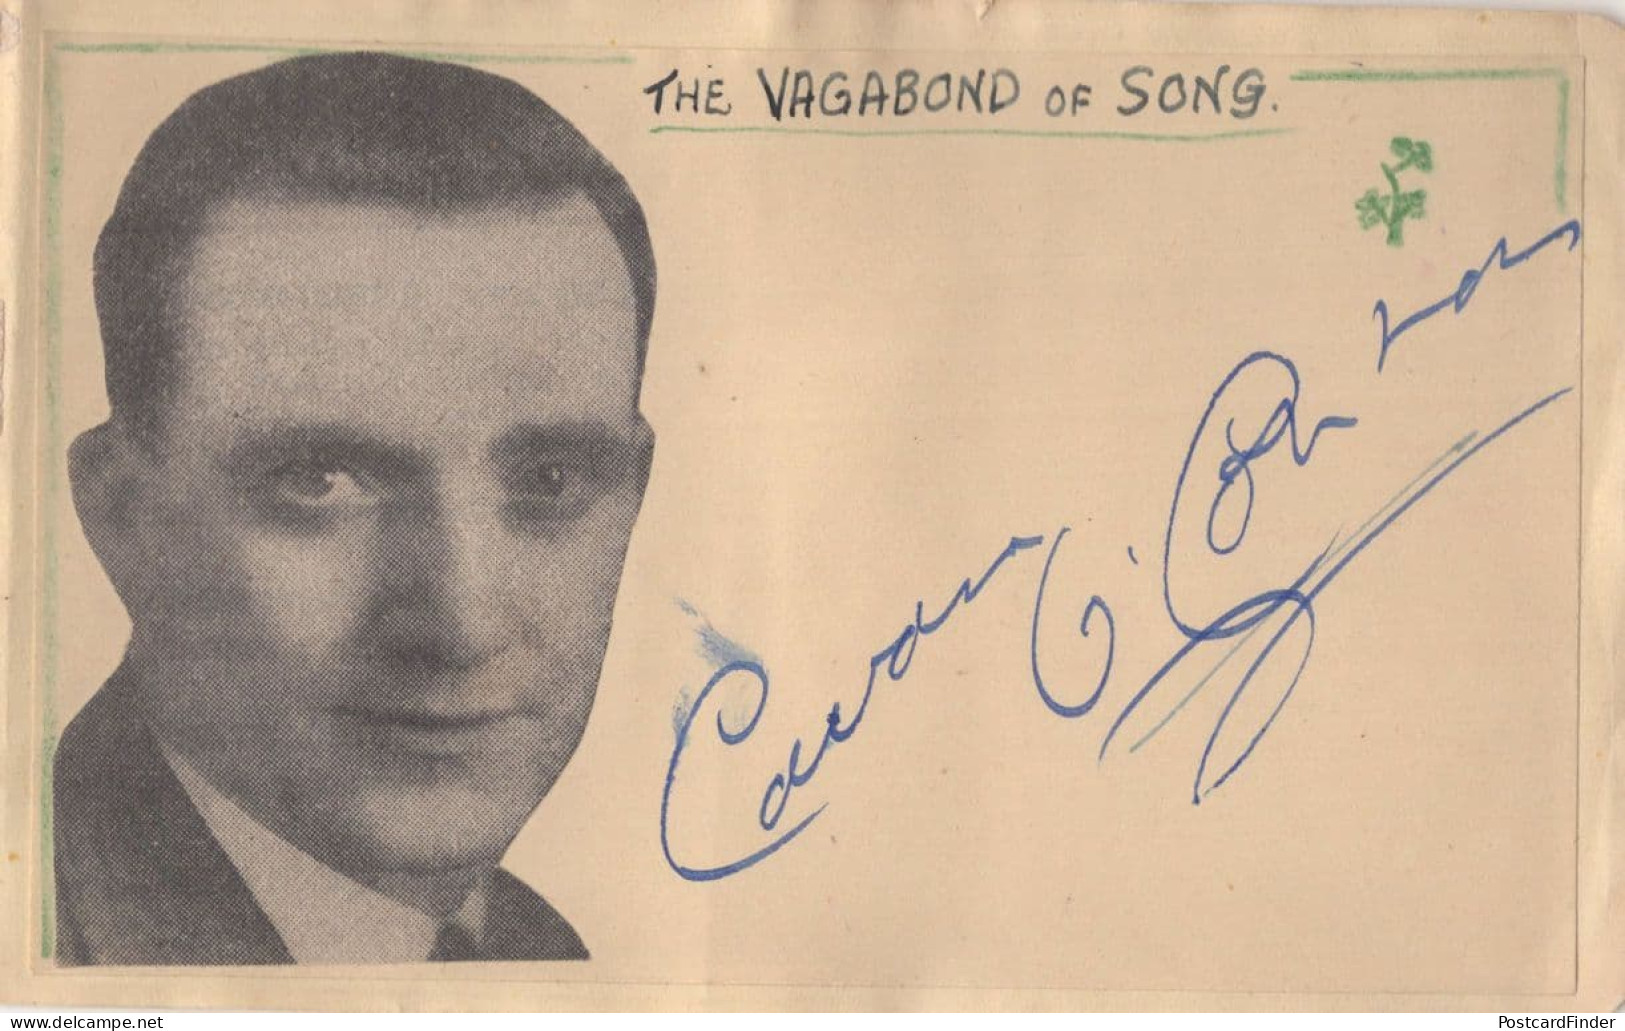 Cavan O'Connor Old Irish Singer Hand Signed Autograph Page - Cantanti E Musicisti